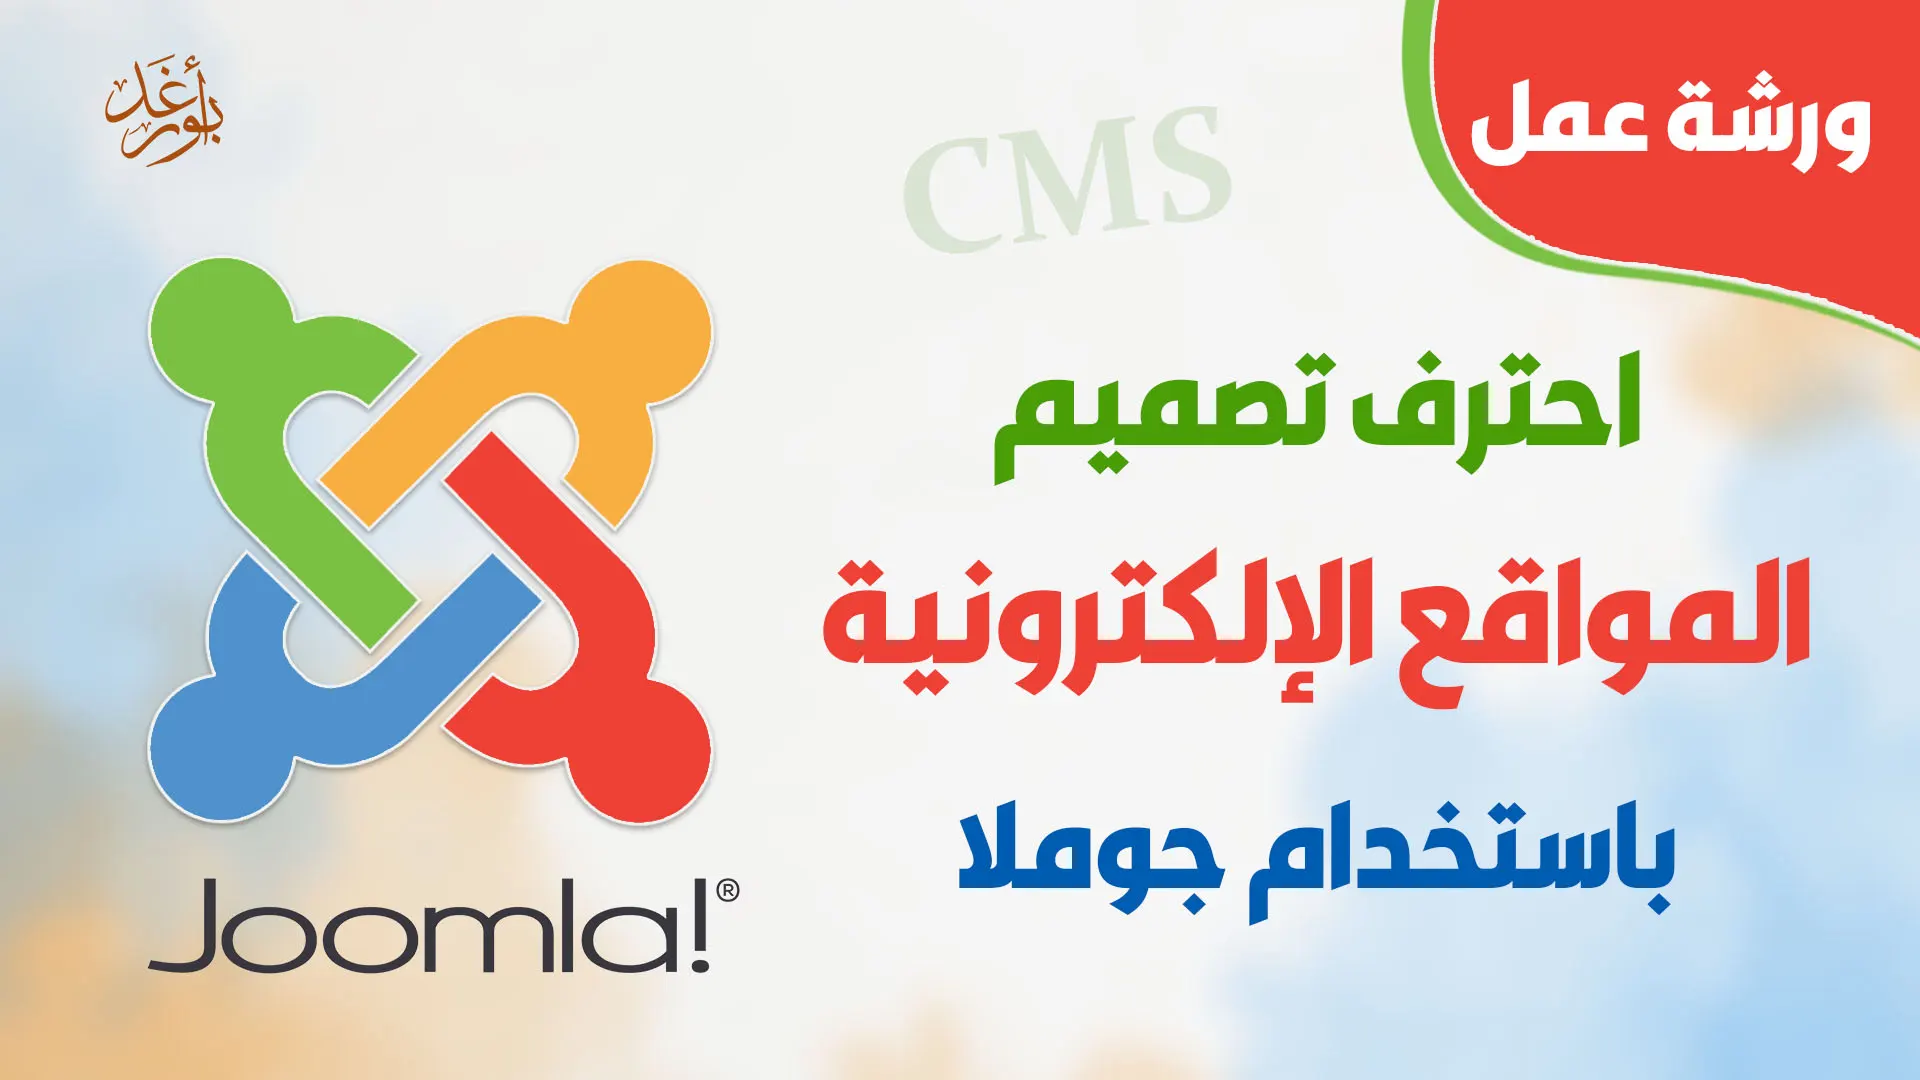 أبو رغد للتصميم والبرمجة | شركة برمجيات سلطنة عمان - مسقط